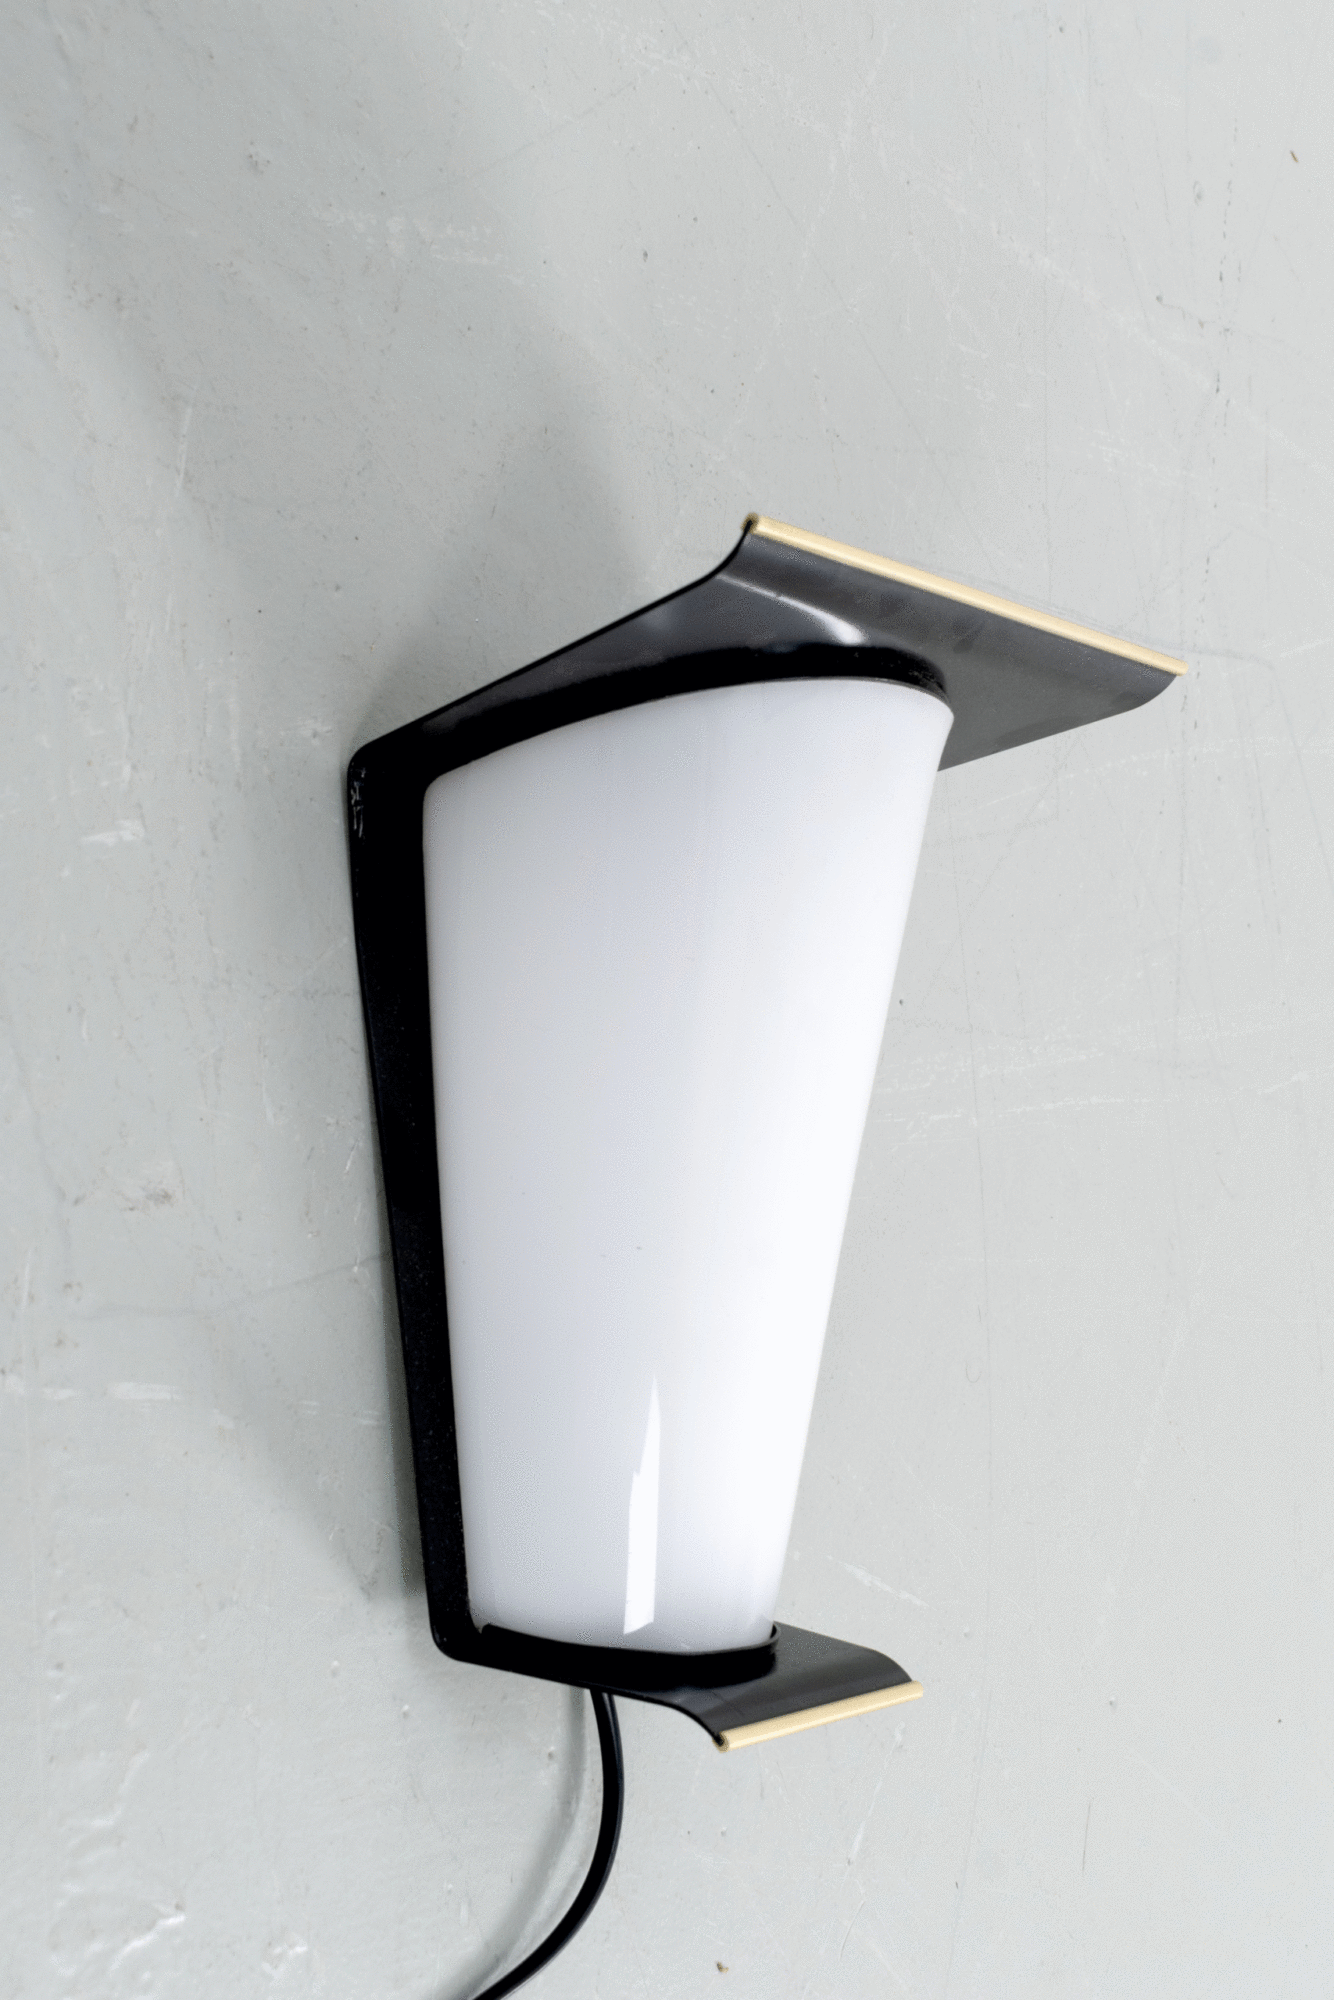 50’s wandlamp met een fraai design